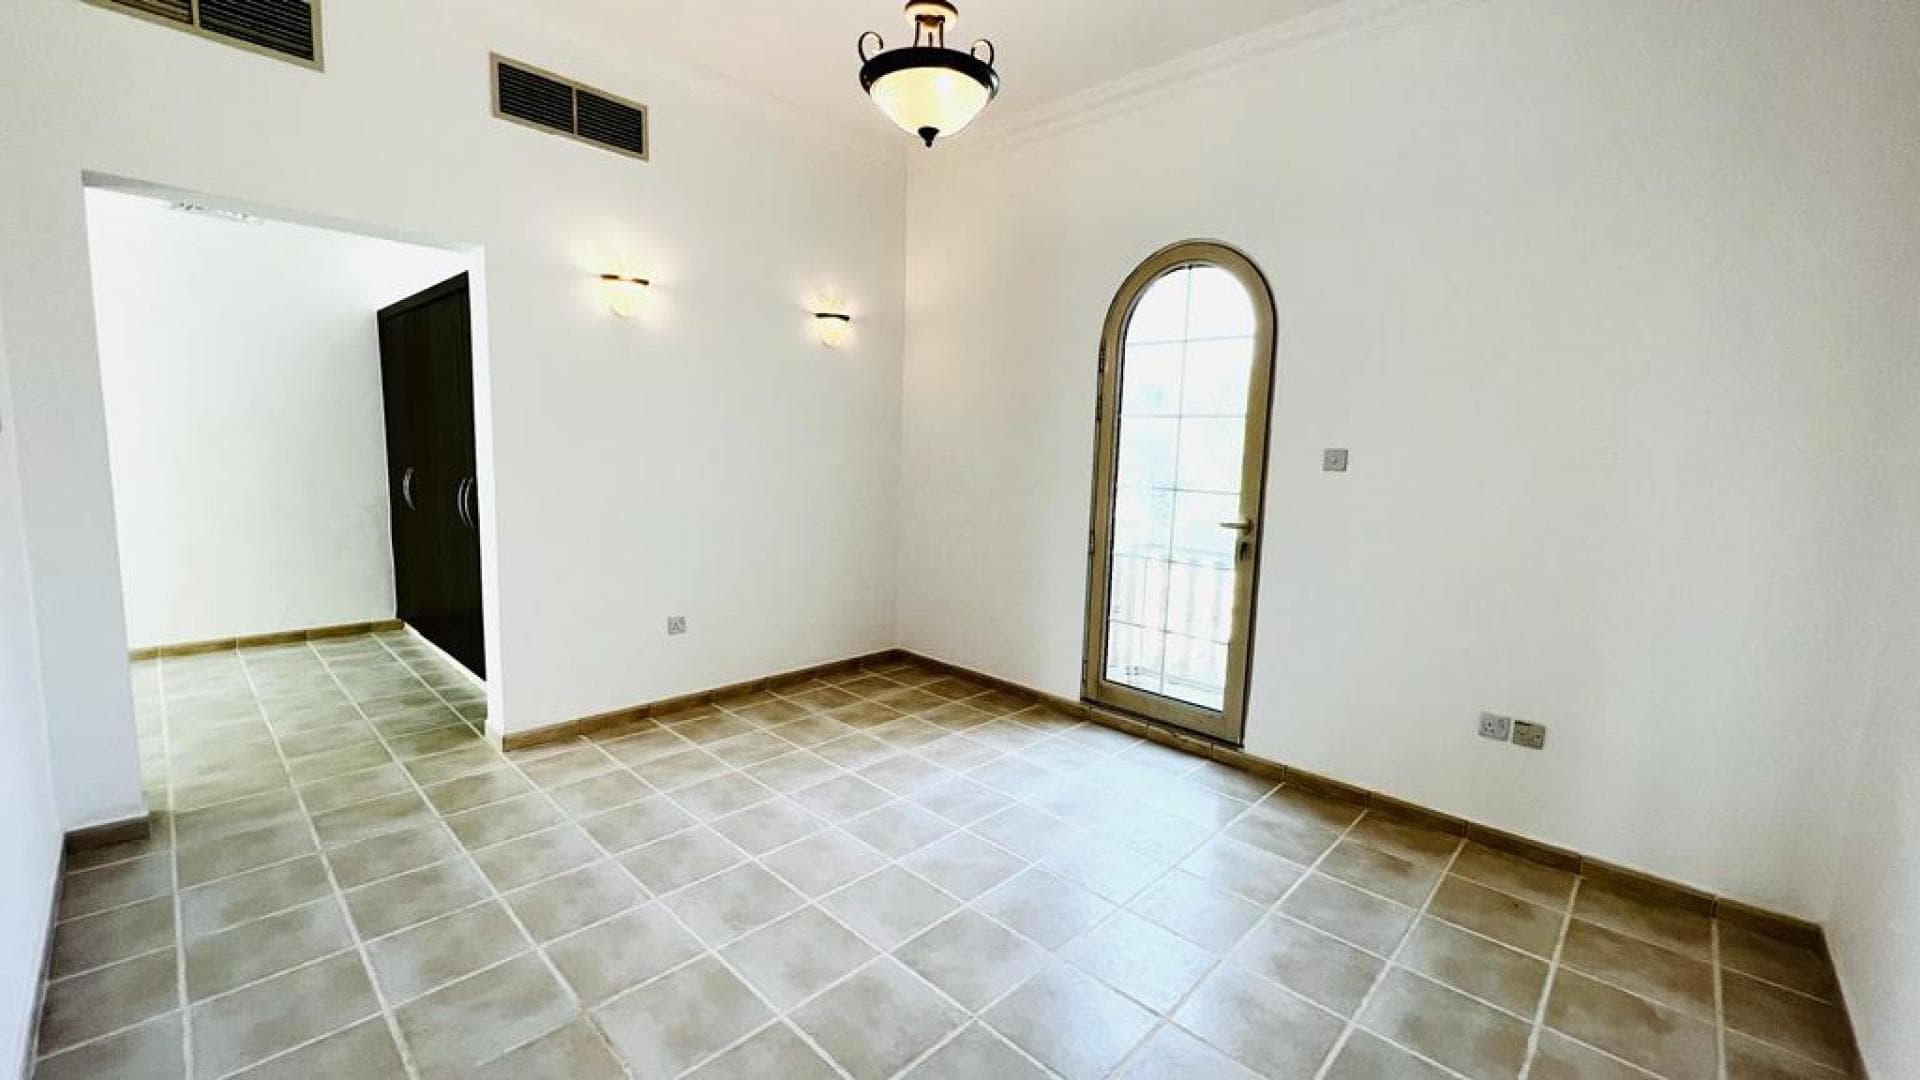 4 Bedroom Villa For Rent Al Thamam 13 Lp18938 1e4f5cf694a82000.jpeg